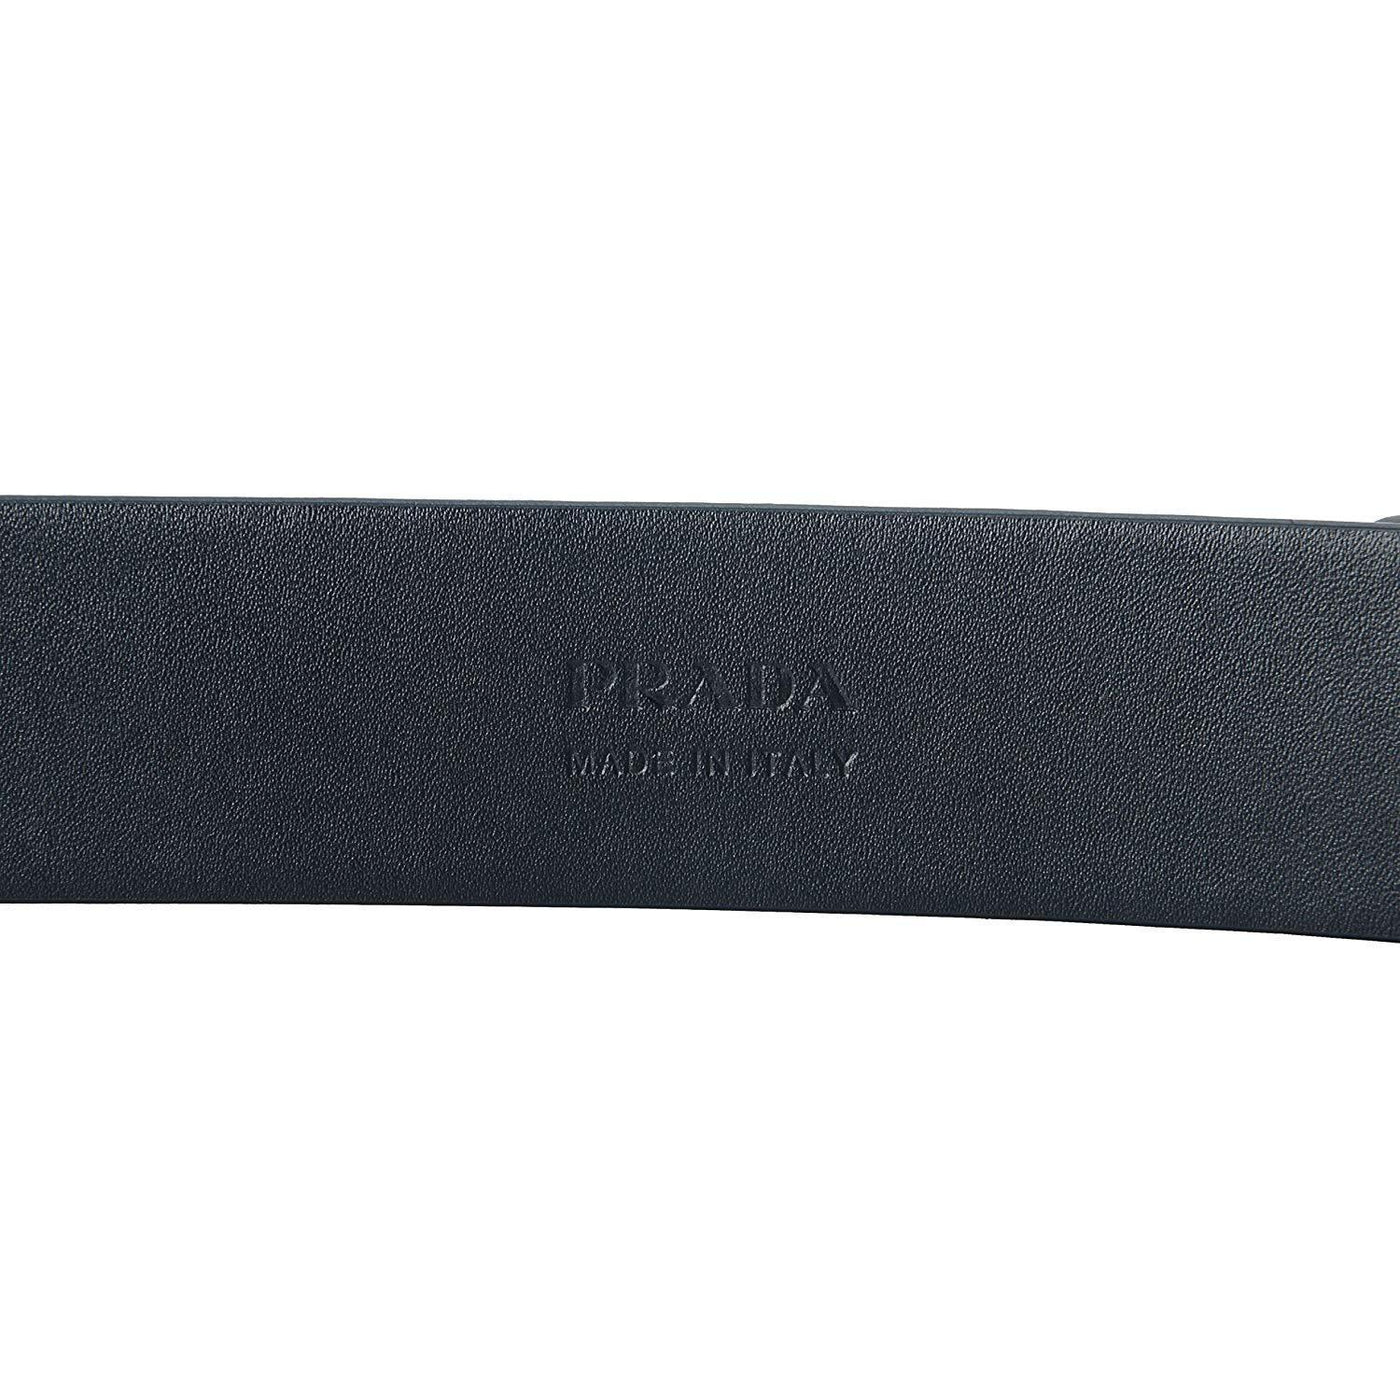 Prada Navy Saffiano Leather Belt Silver Belt Buckle Size 100/40 - LUXURYMRKT